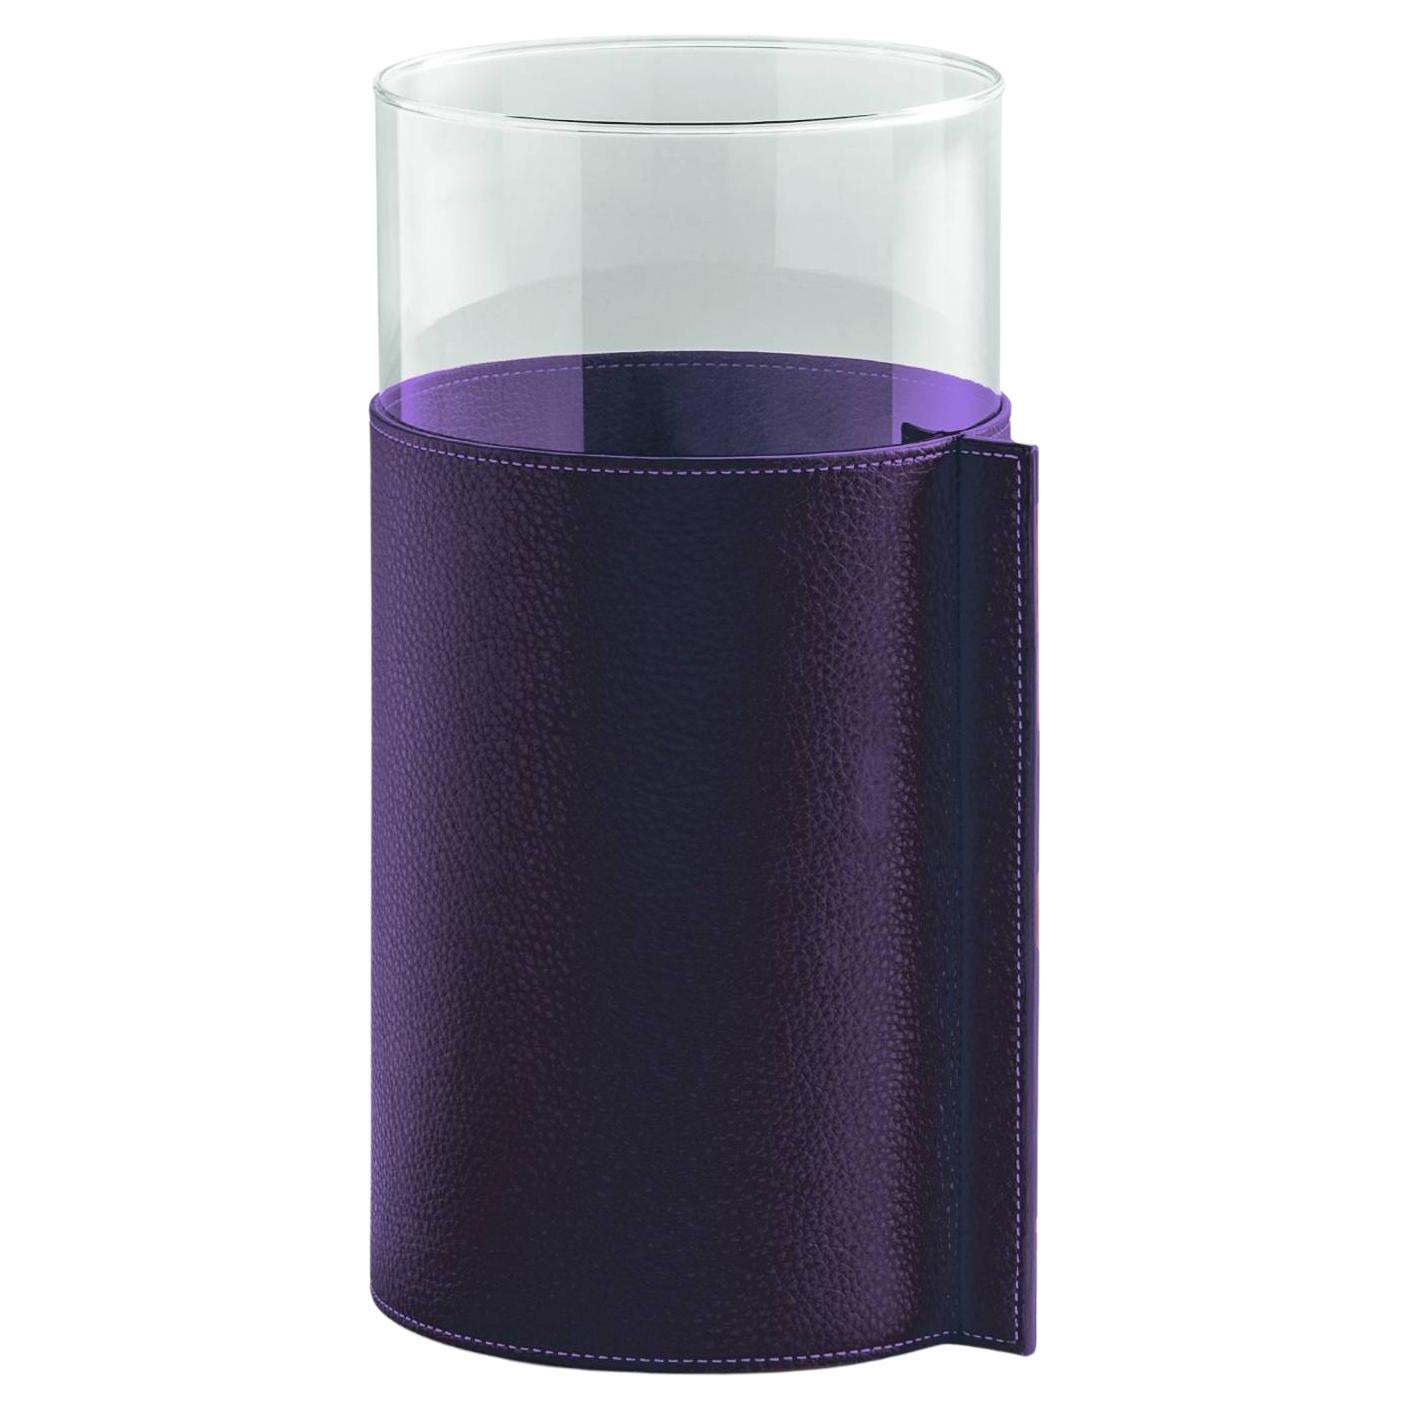 Ledertopf-Vase aus hohem Glas mit Lederpelle SC 255 Belladonna Violett bedeckt